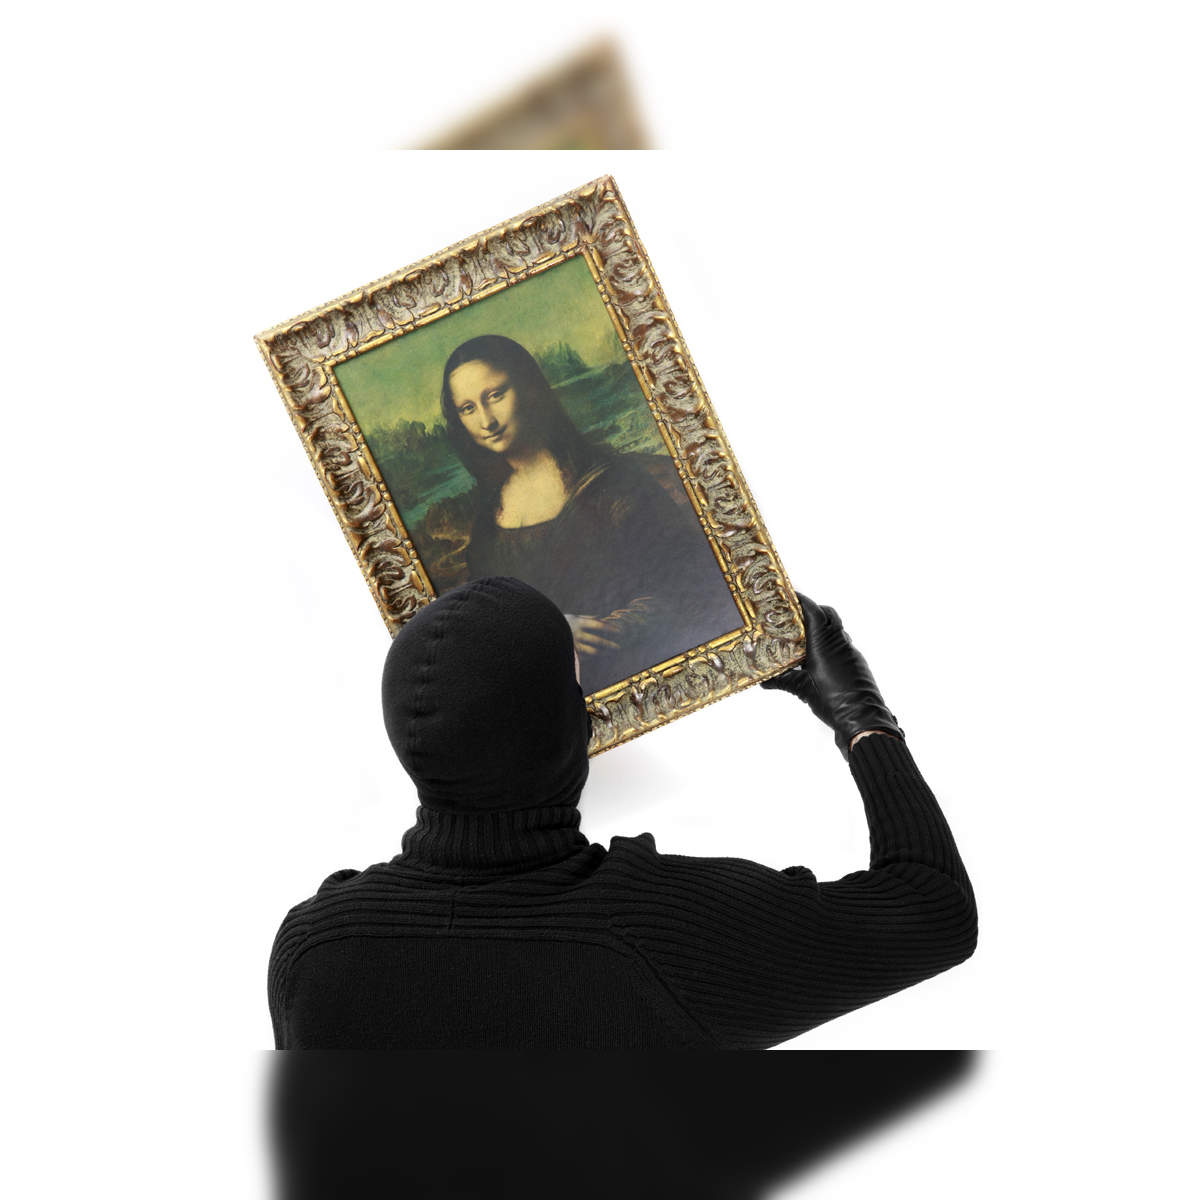 Hidden portrait 'found under Mona Lisa': French scientist